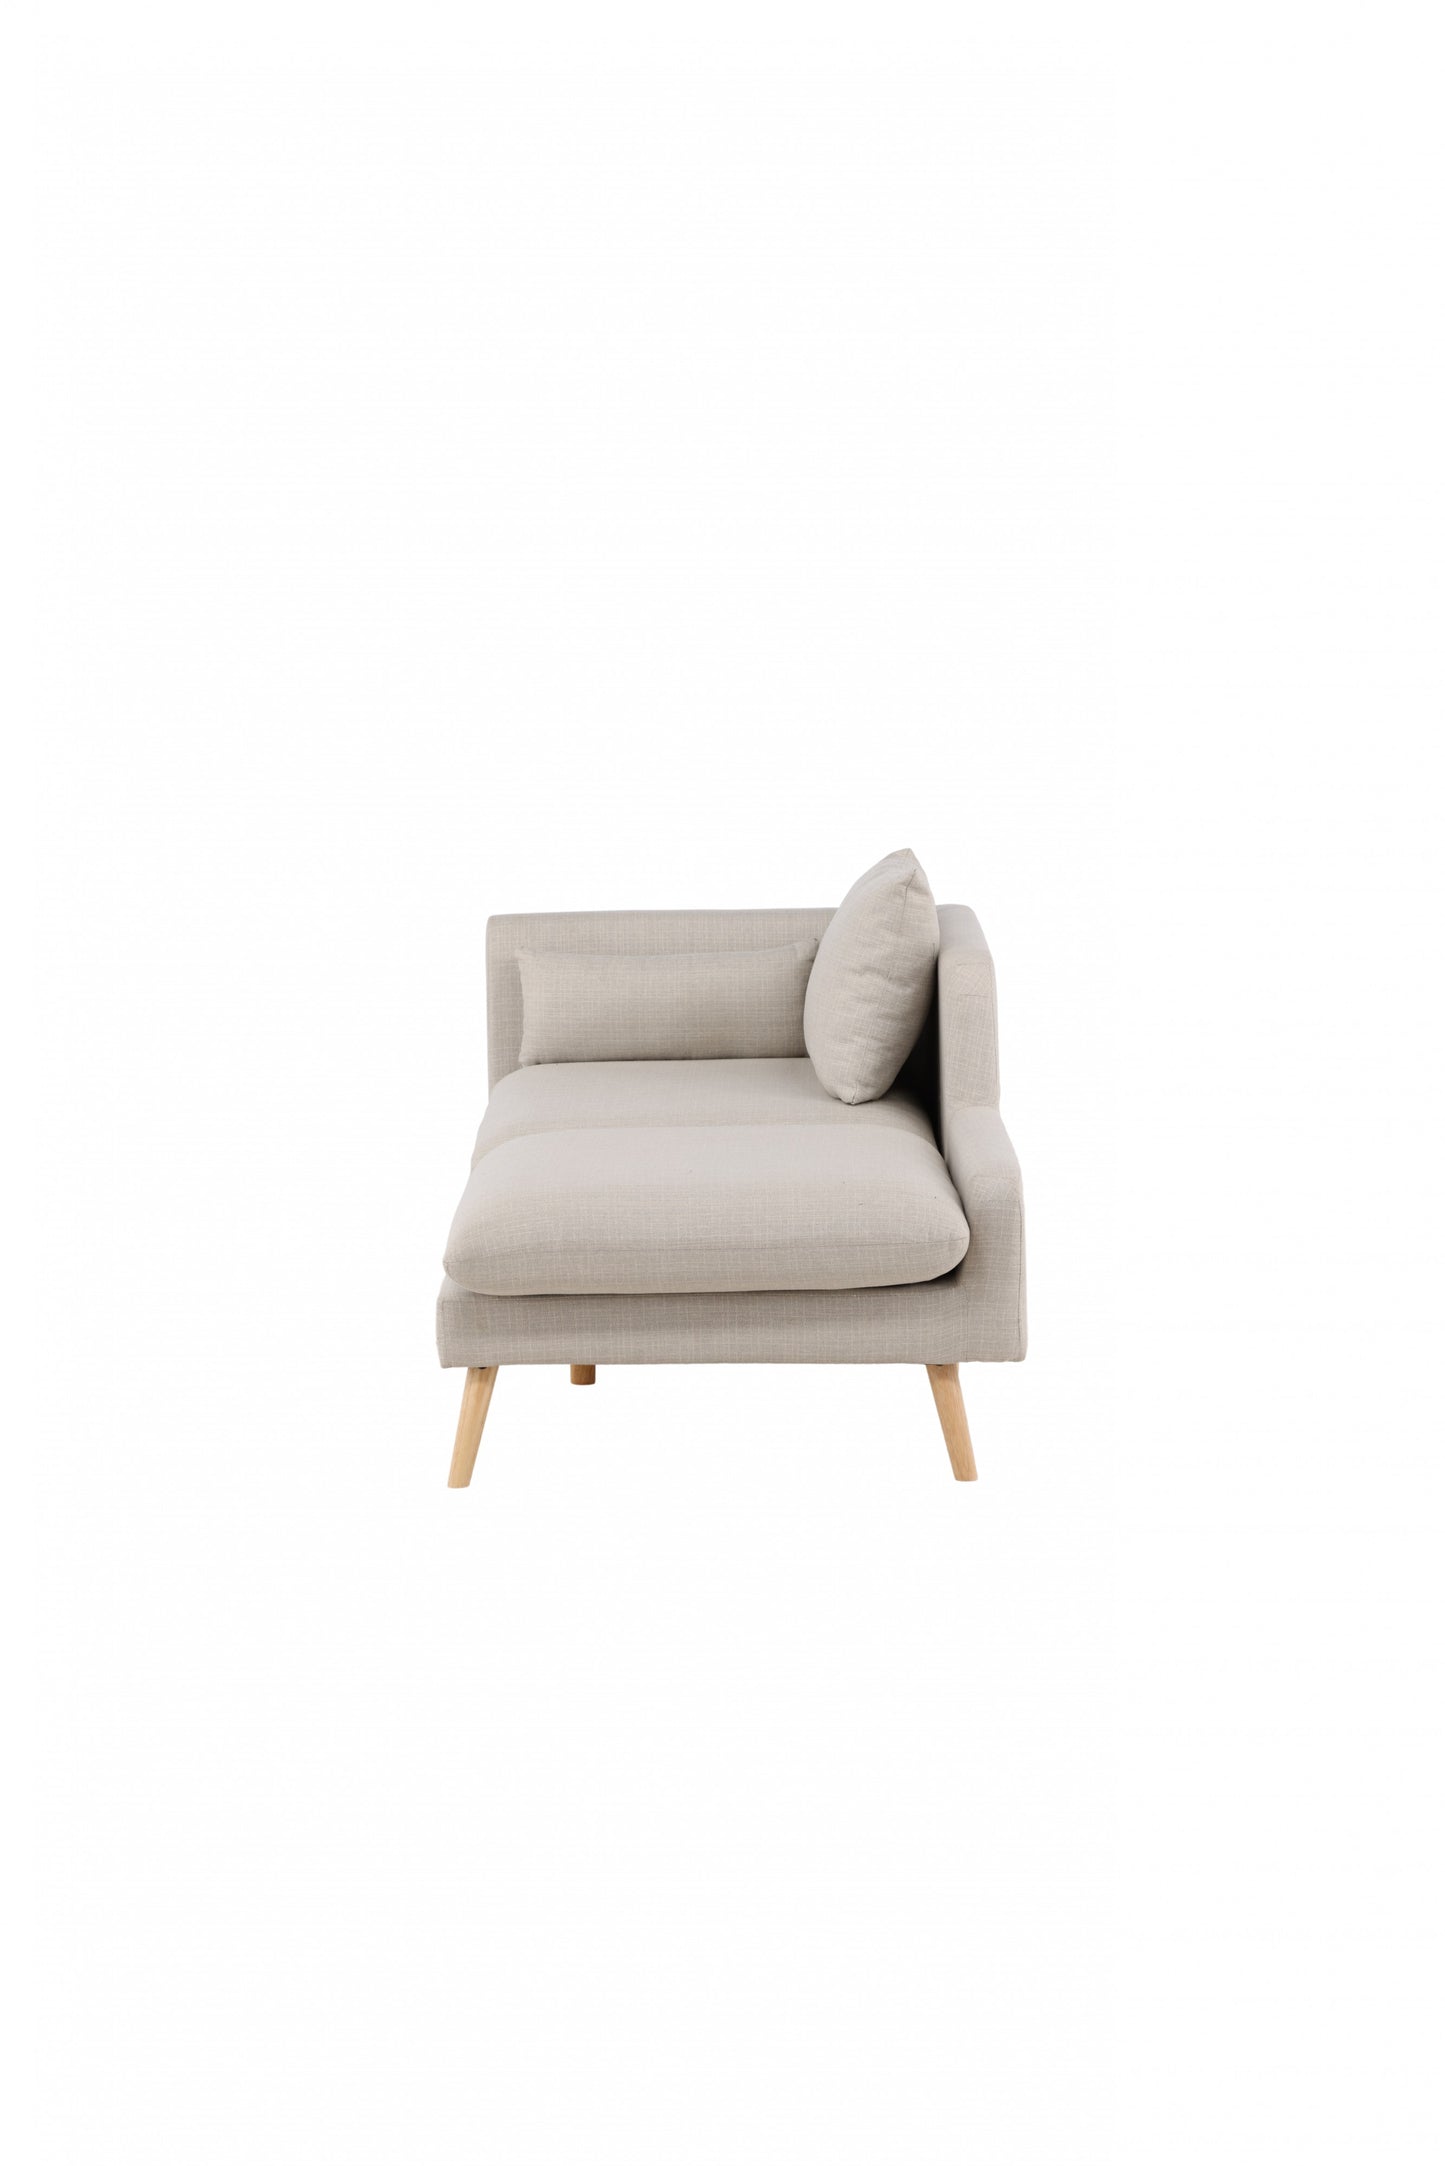 Venture Design | Tacoma Sofa - Lätt trälook / Linnetyg